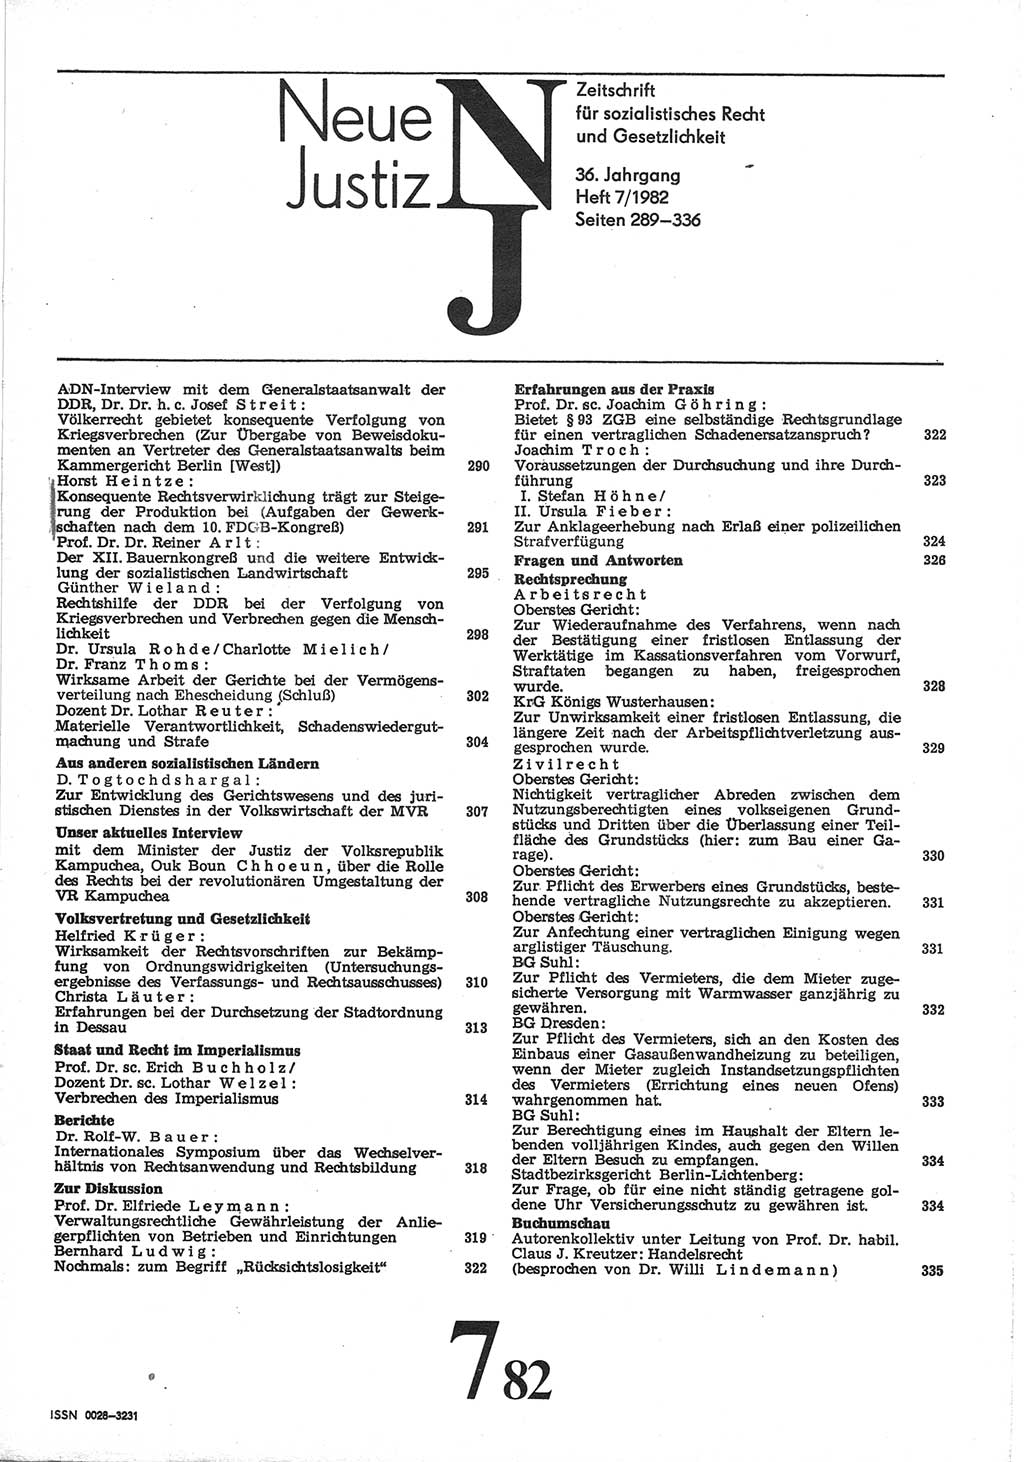 Neue Justiz (NJ), Zeitschrift für sozialistisches Recht und Gesetzlichkeit [Deutsche Demokratische Republik (DDR)], 36. Jahrgang 1982, Seite 289 (NJ DDR 1982, S. 289)